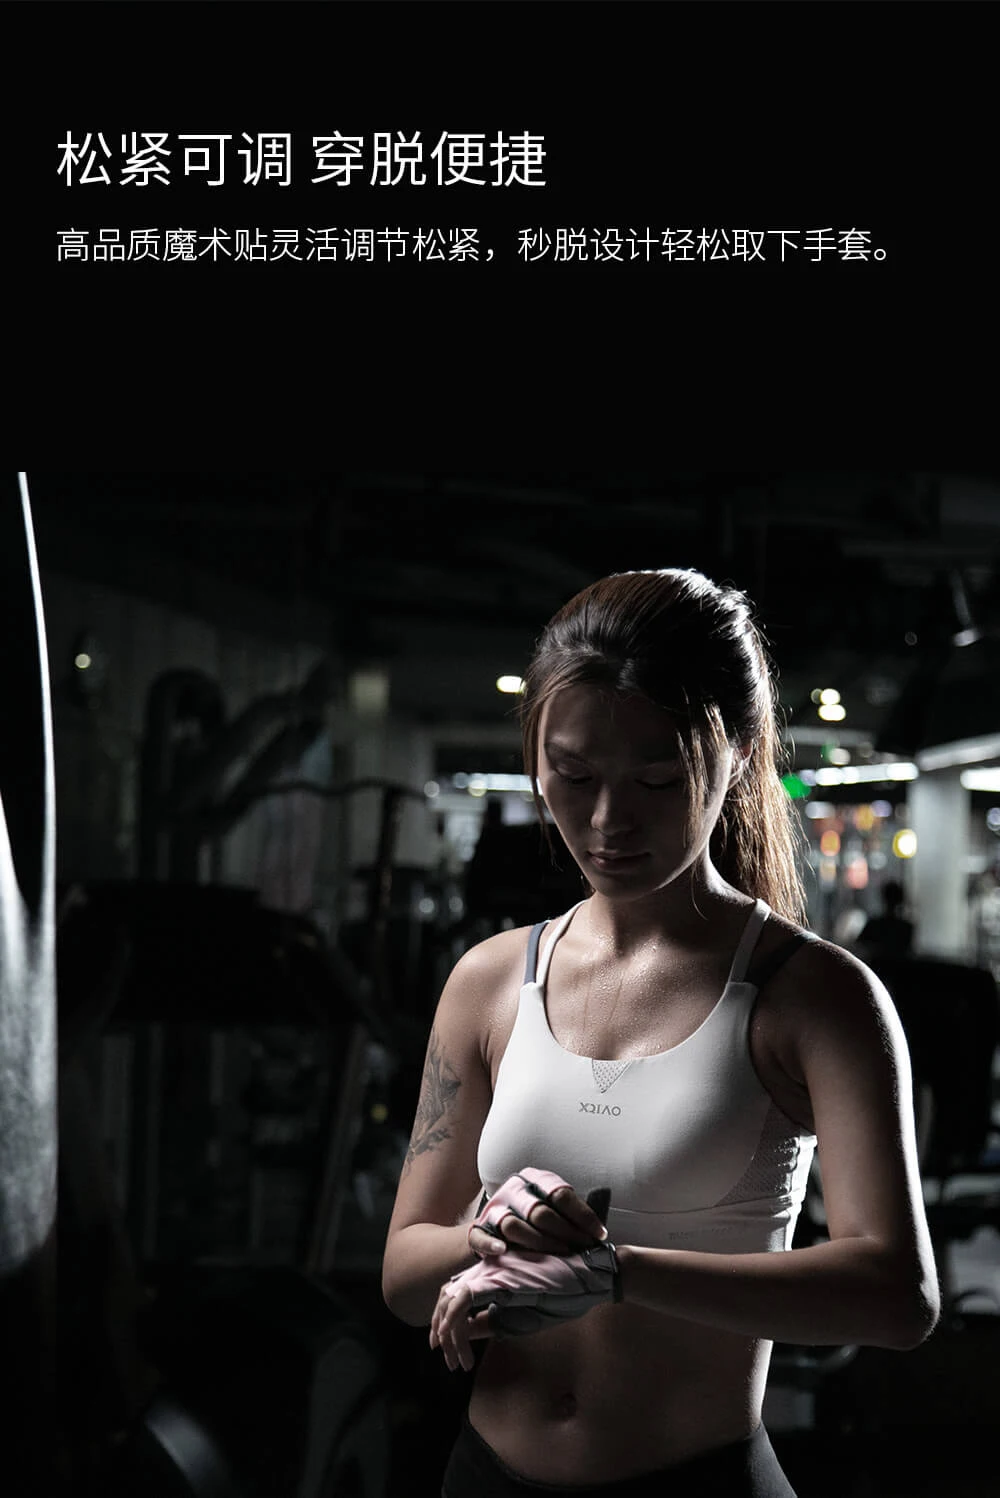 Xiaomi XQIAO фитнес легкие перчатки тренажерный зал дышащие сухие нескользящие спортивные упражнения Тяжелая атлетика тренировочные перчатки для умного дома